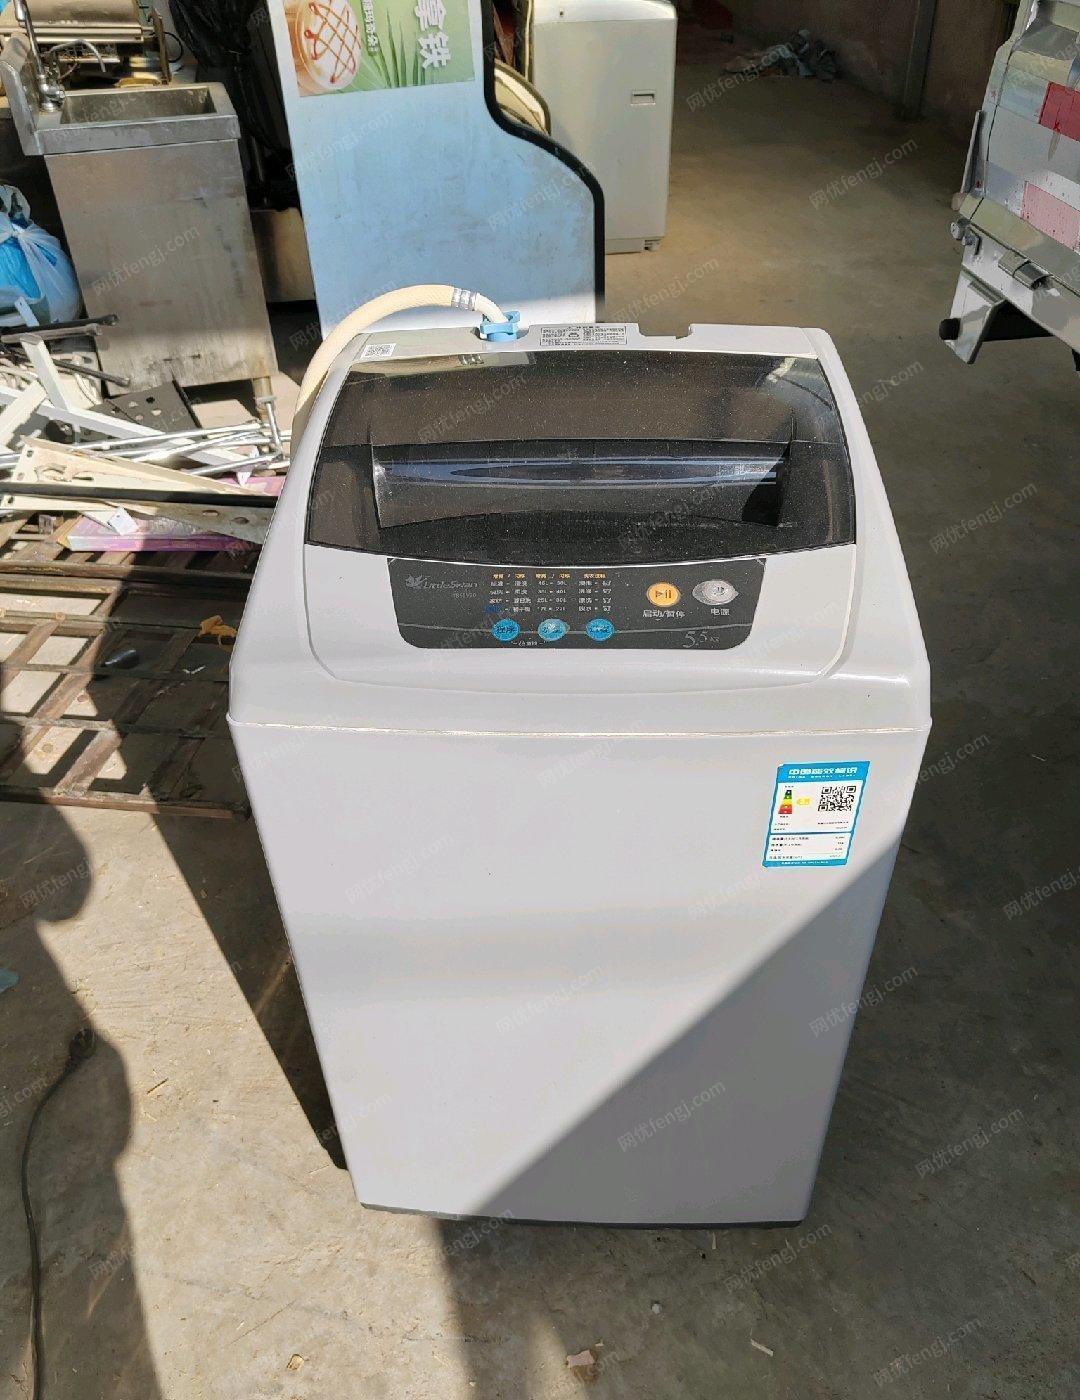 甘肃兰州低价处理9成新全自动洗衣机。可以送货到家